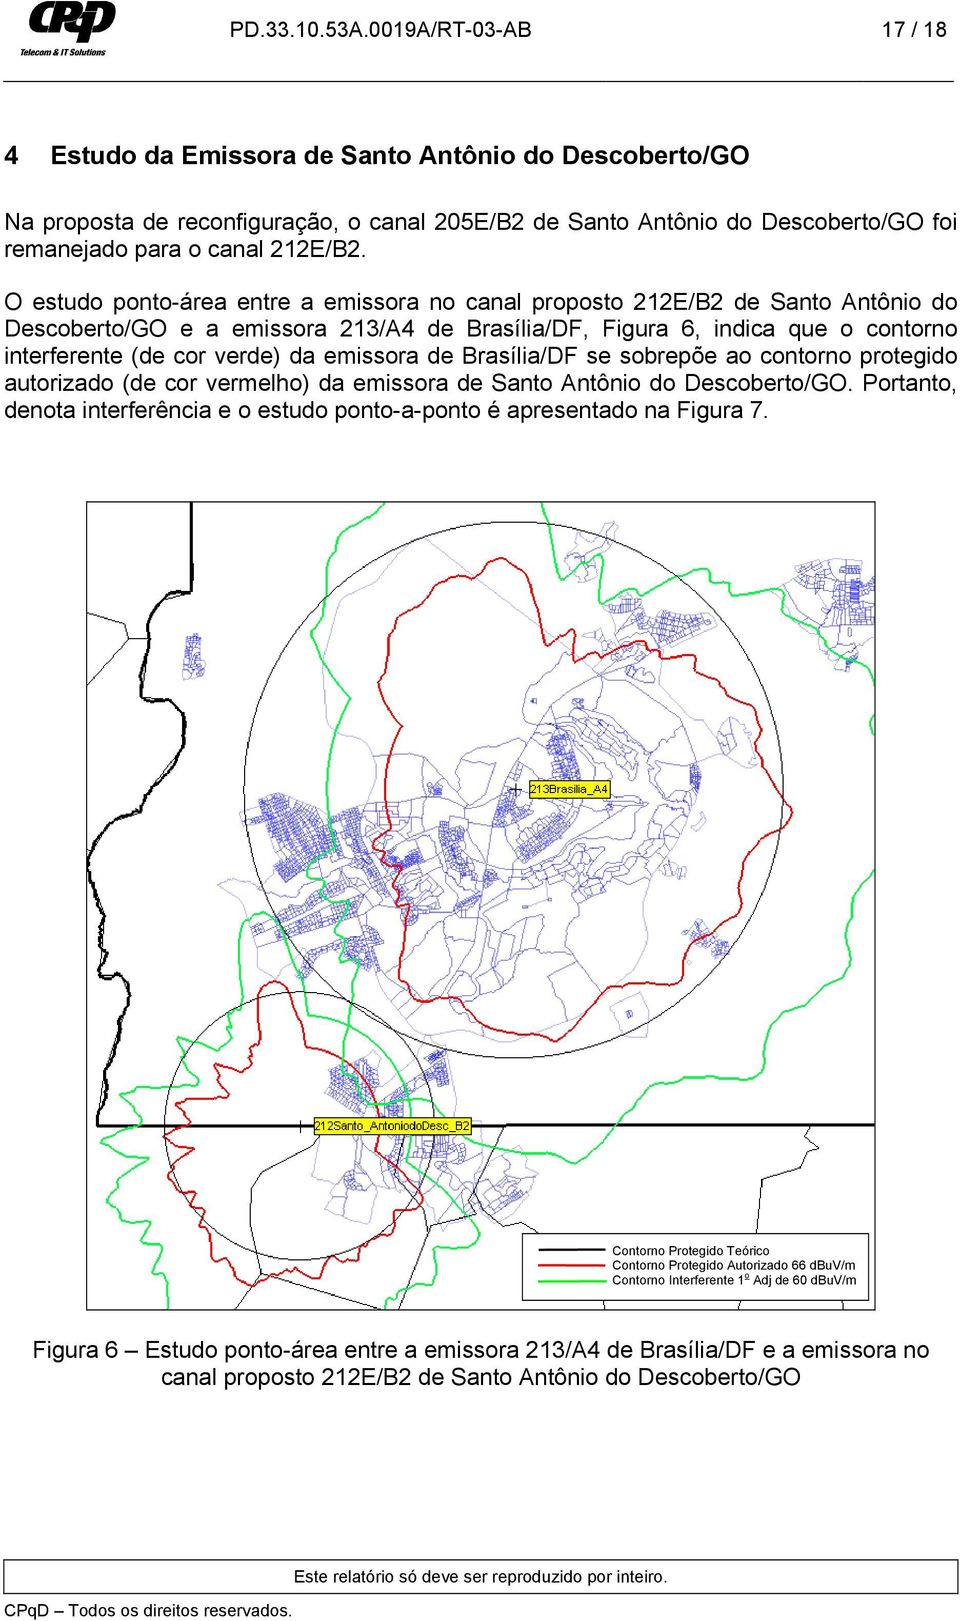 O estudo ponto-área entre a emissora no canal proposto 212E/B2 de Santo Antônio do Descoberto/GO e a emissora 213/A4 de Brasília/DF, Figura 6, indica que o contorno interferente (de cor verde) da